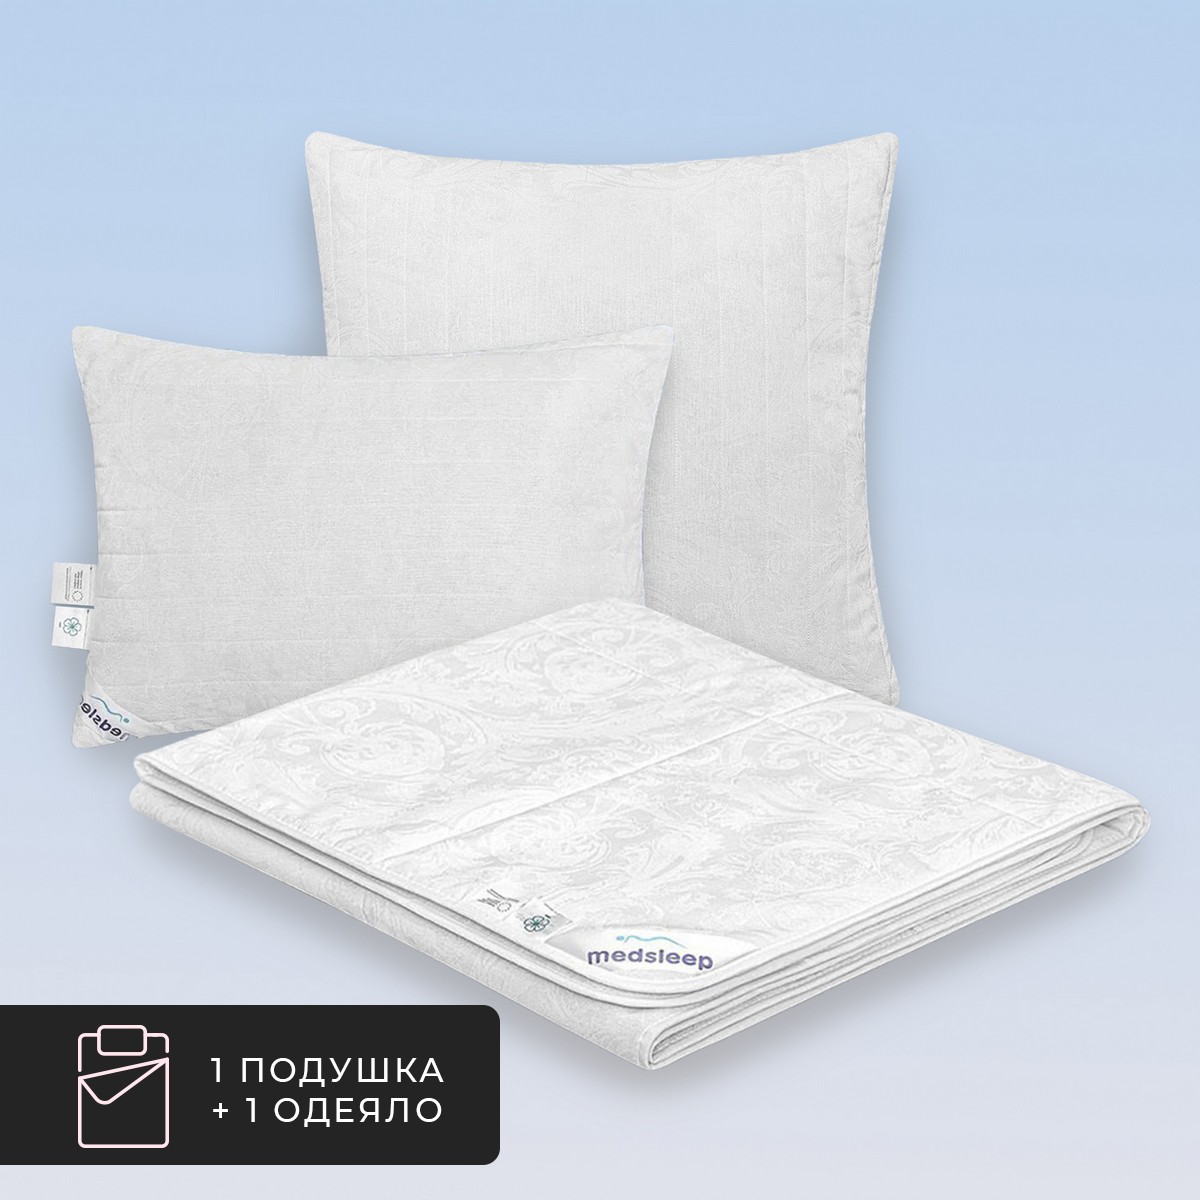 Набор 1 одеяло + 1 подушка облегченное Skylor, льняное волокно в хлопковом тике (140х200, 50х70)